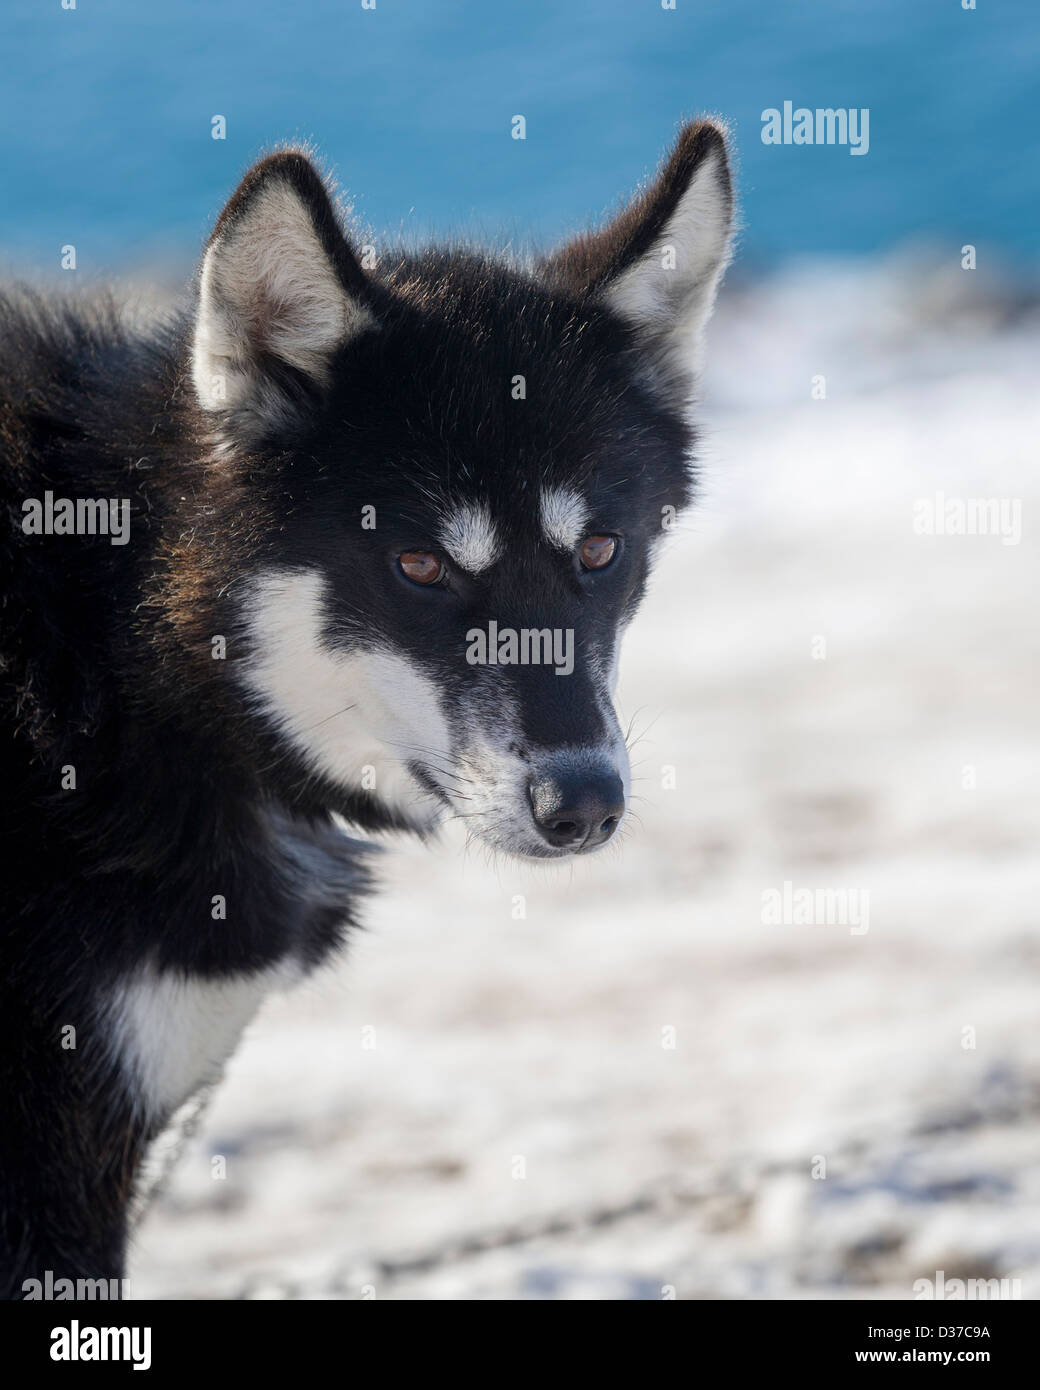 Husky de Sibérie (Canis familiaris), enchaînés de chiens de traîneau (Ittoqqortoormiit Scoresbysund) Sermersooq Municipalité, Groenland Banque D'Images